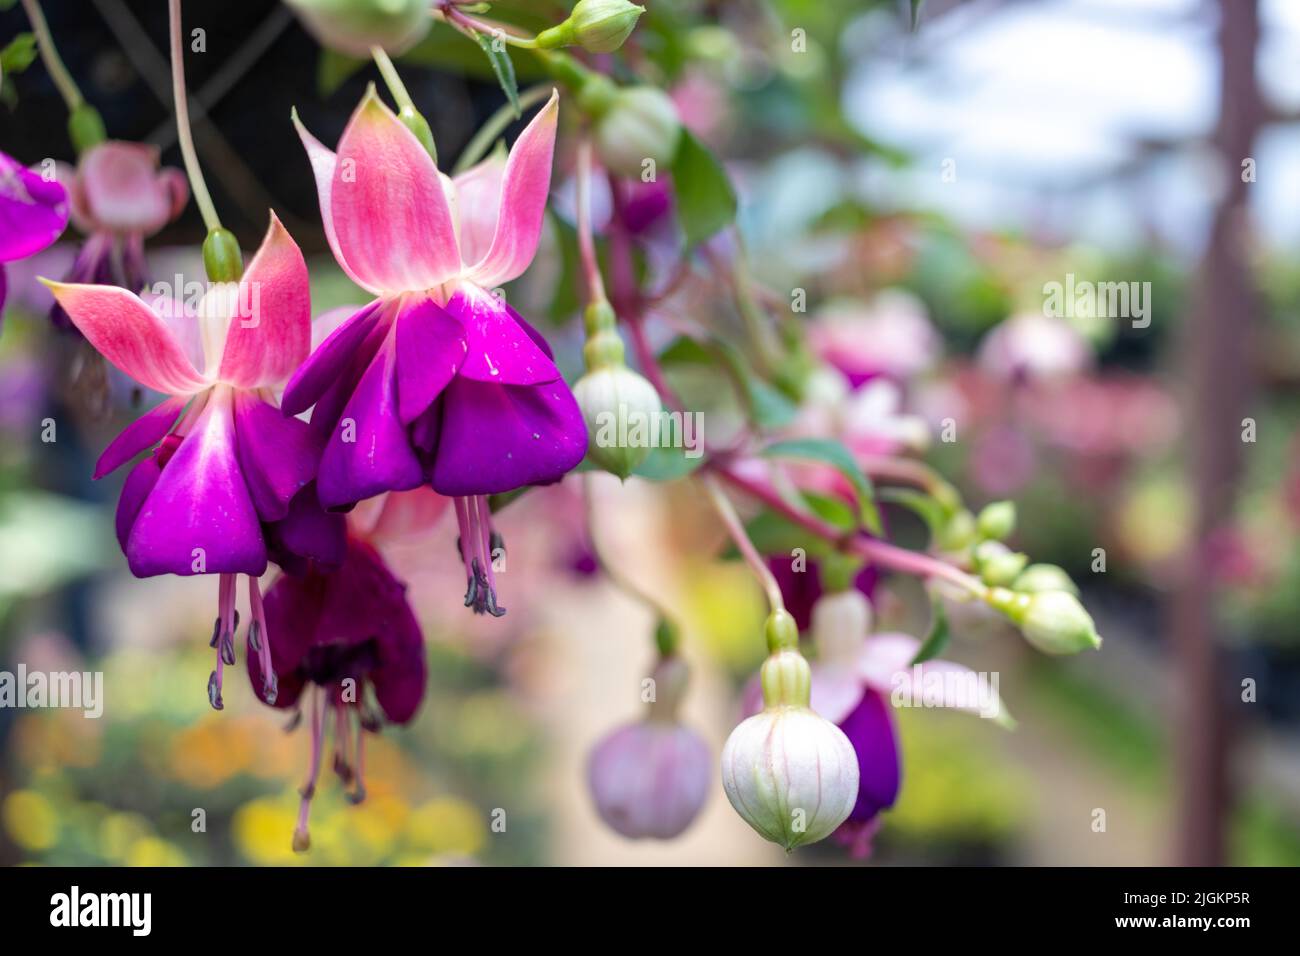 Fucsia hibrida flor, foto de alta calidad Foto de stock